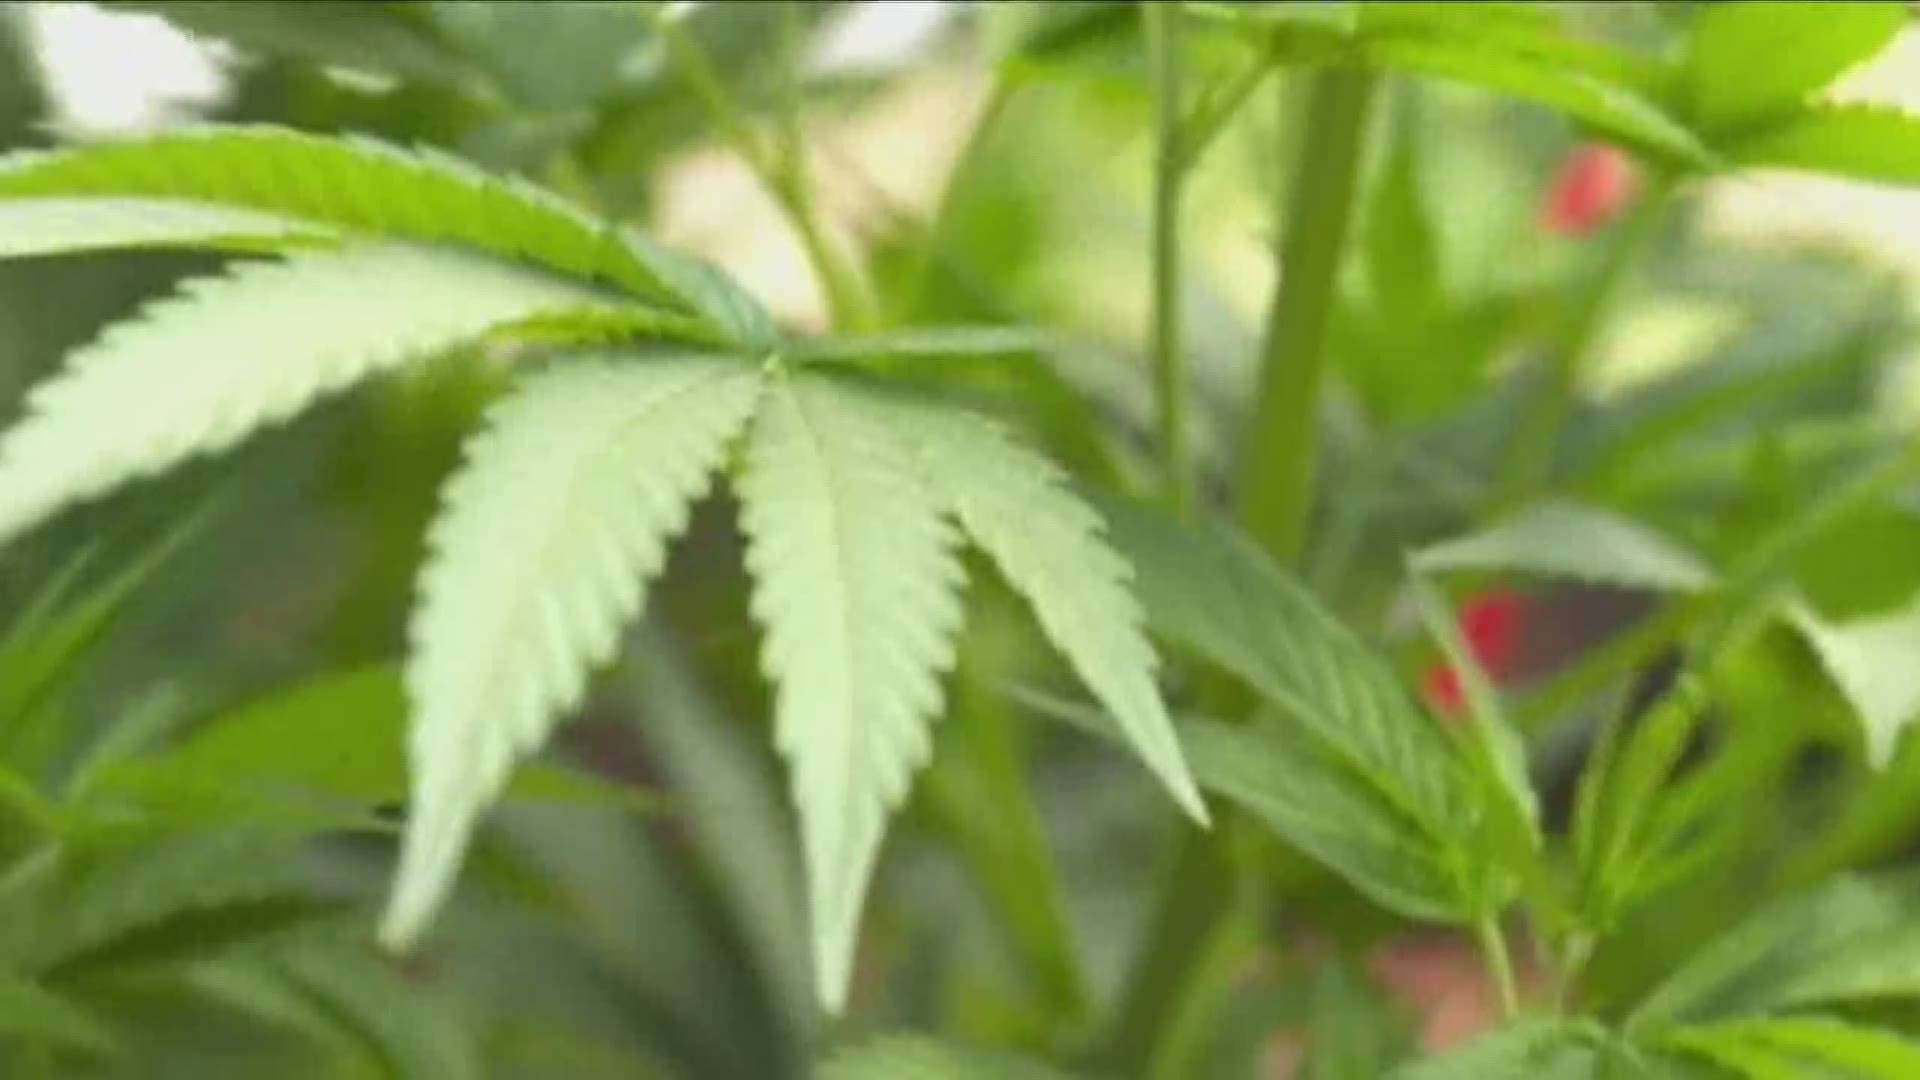 "Positive Effect " Of Legalizing Marijuana